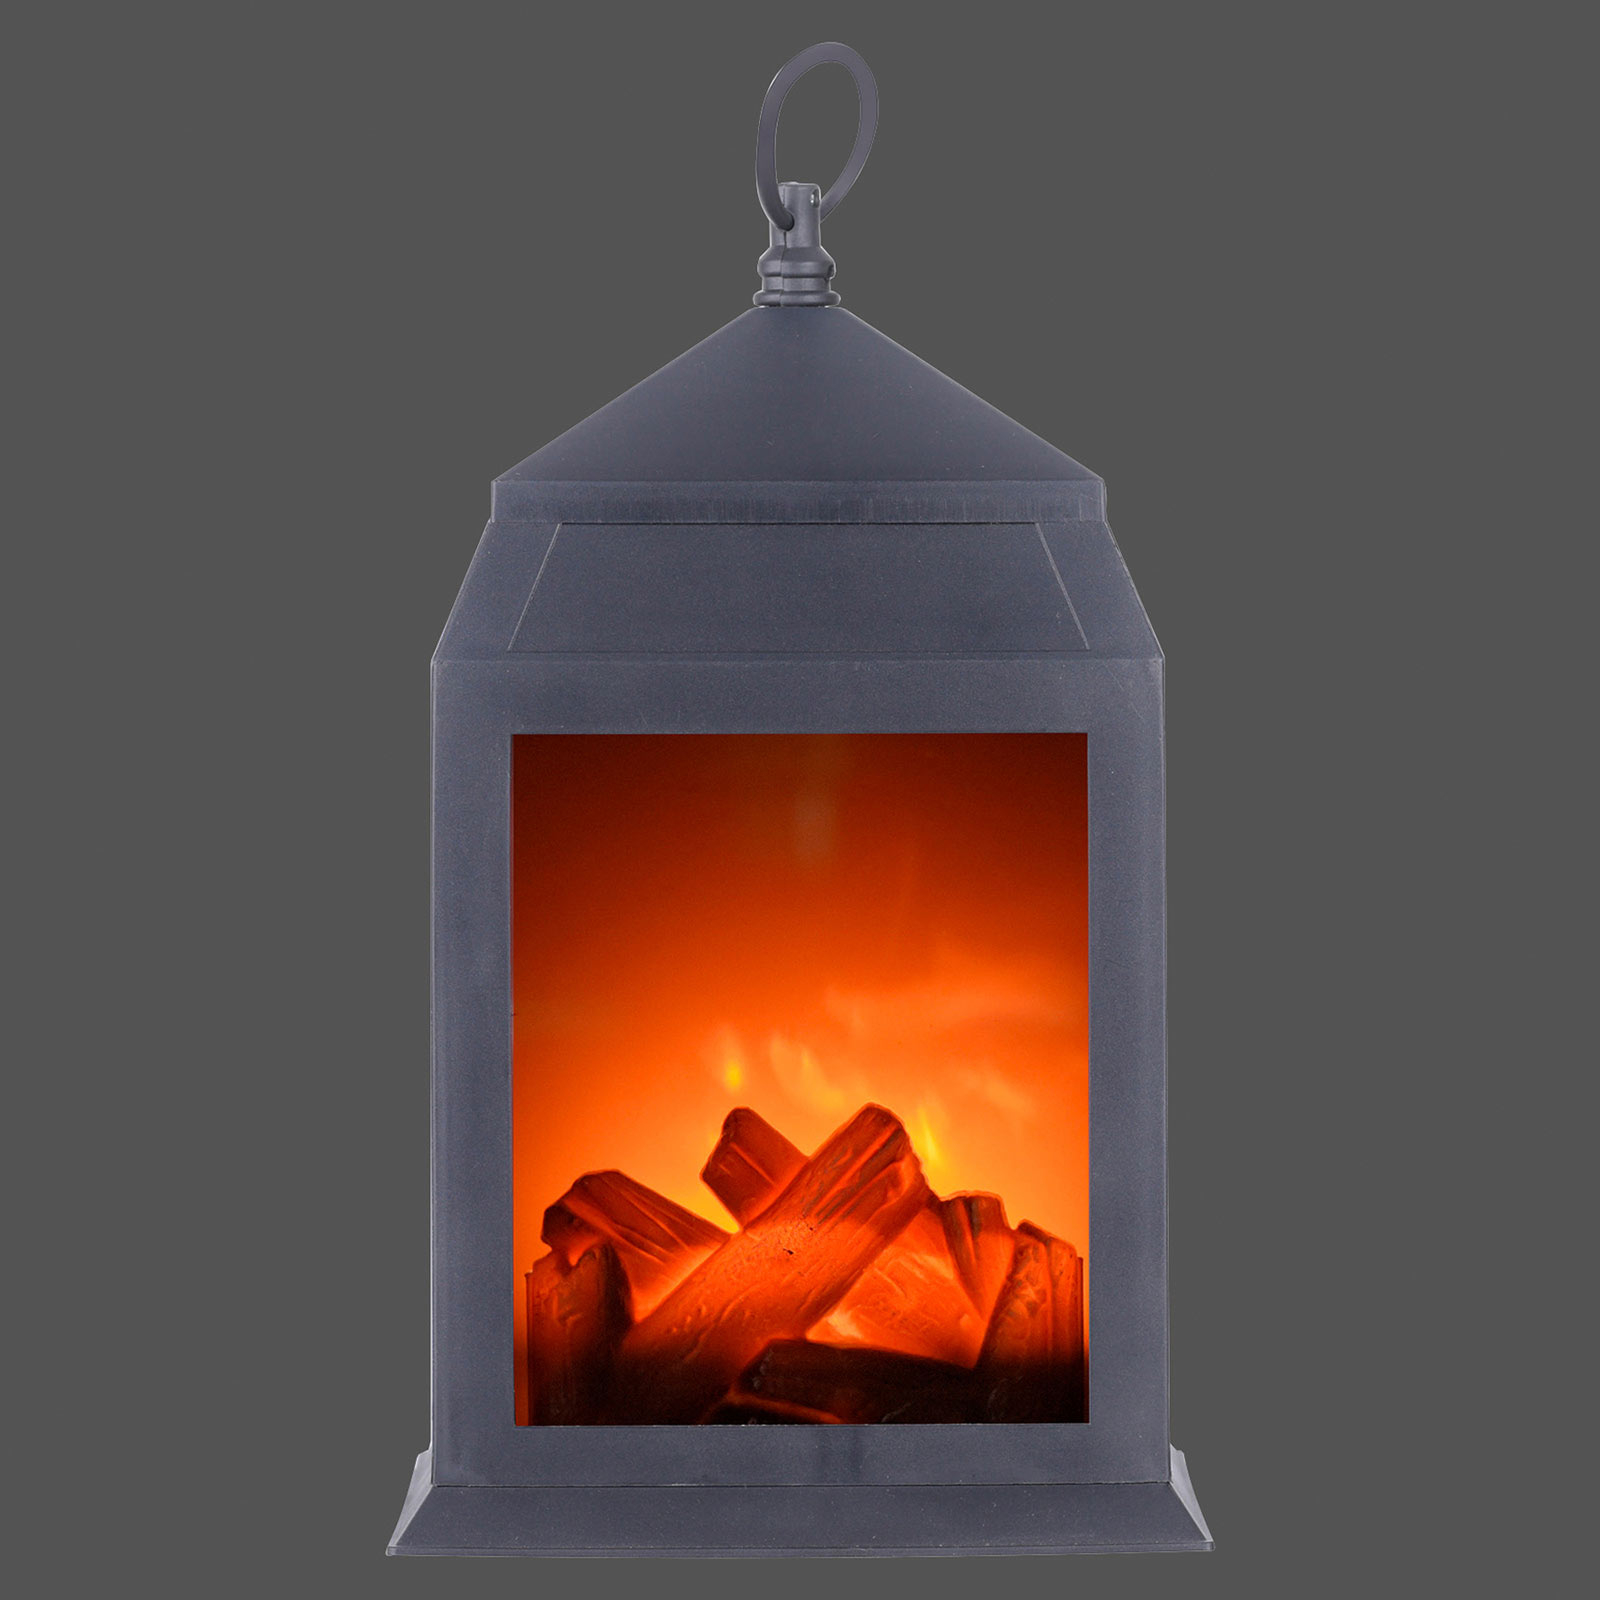 LED dekorativní světlo Chimney přenosné, 15,8 cm